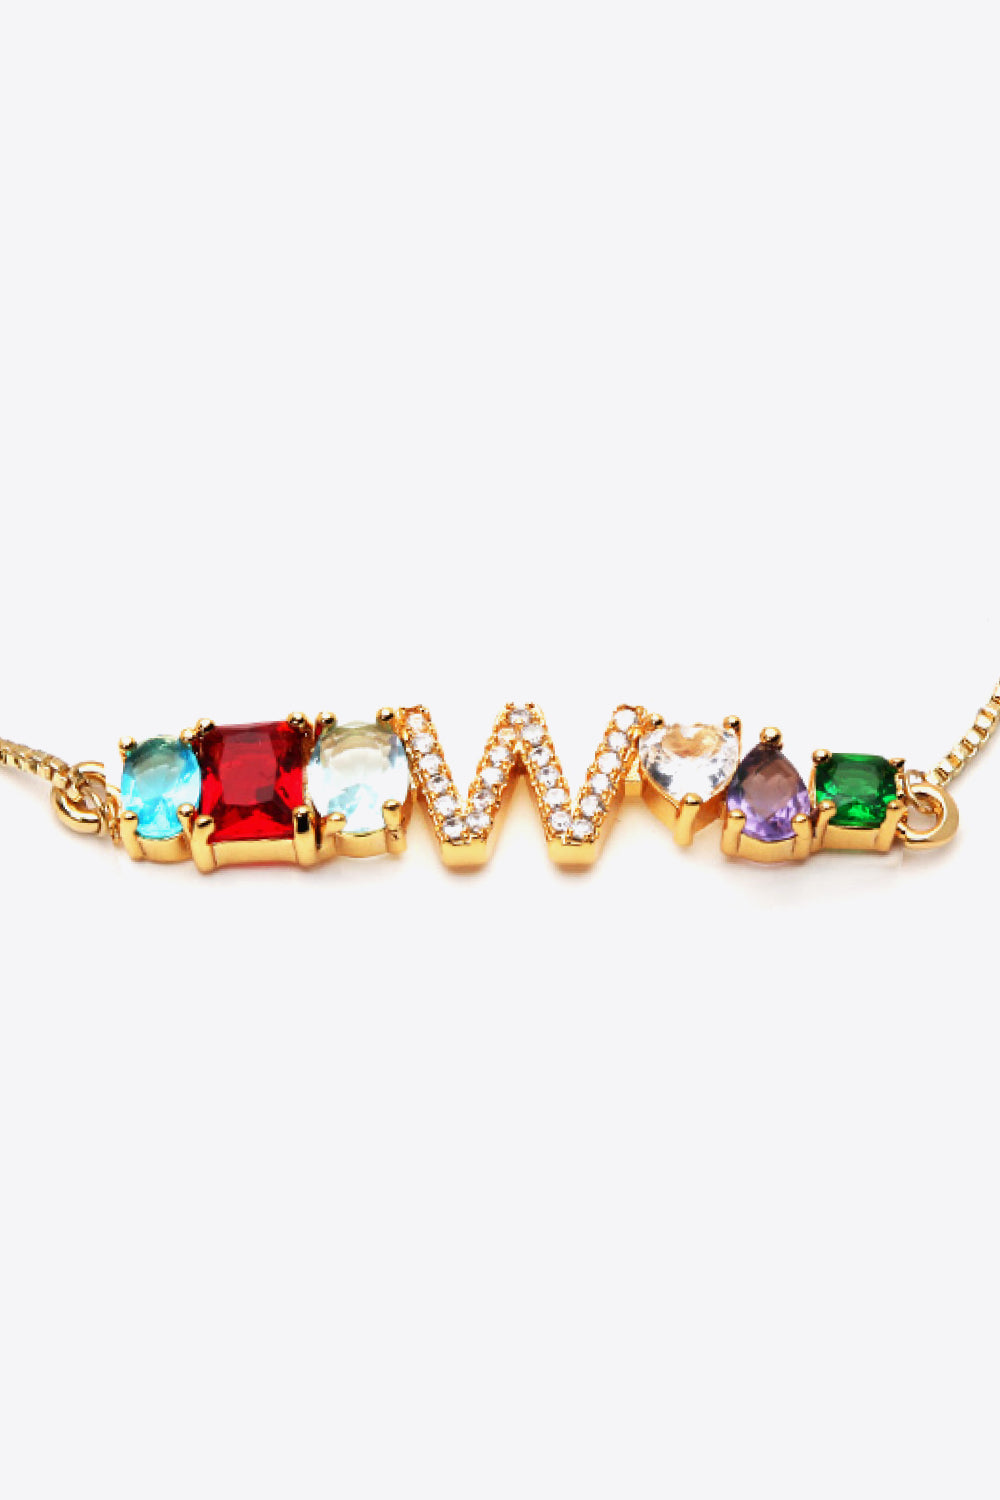 U to Z Zircon Bracelet - Women’s Jewelry - Bracelets - 8 - 2024